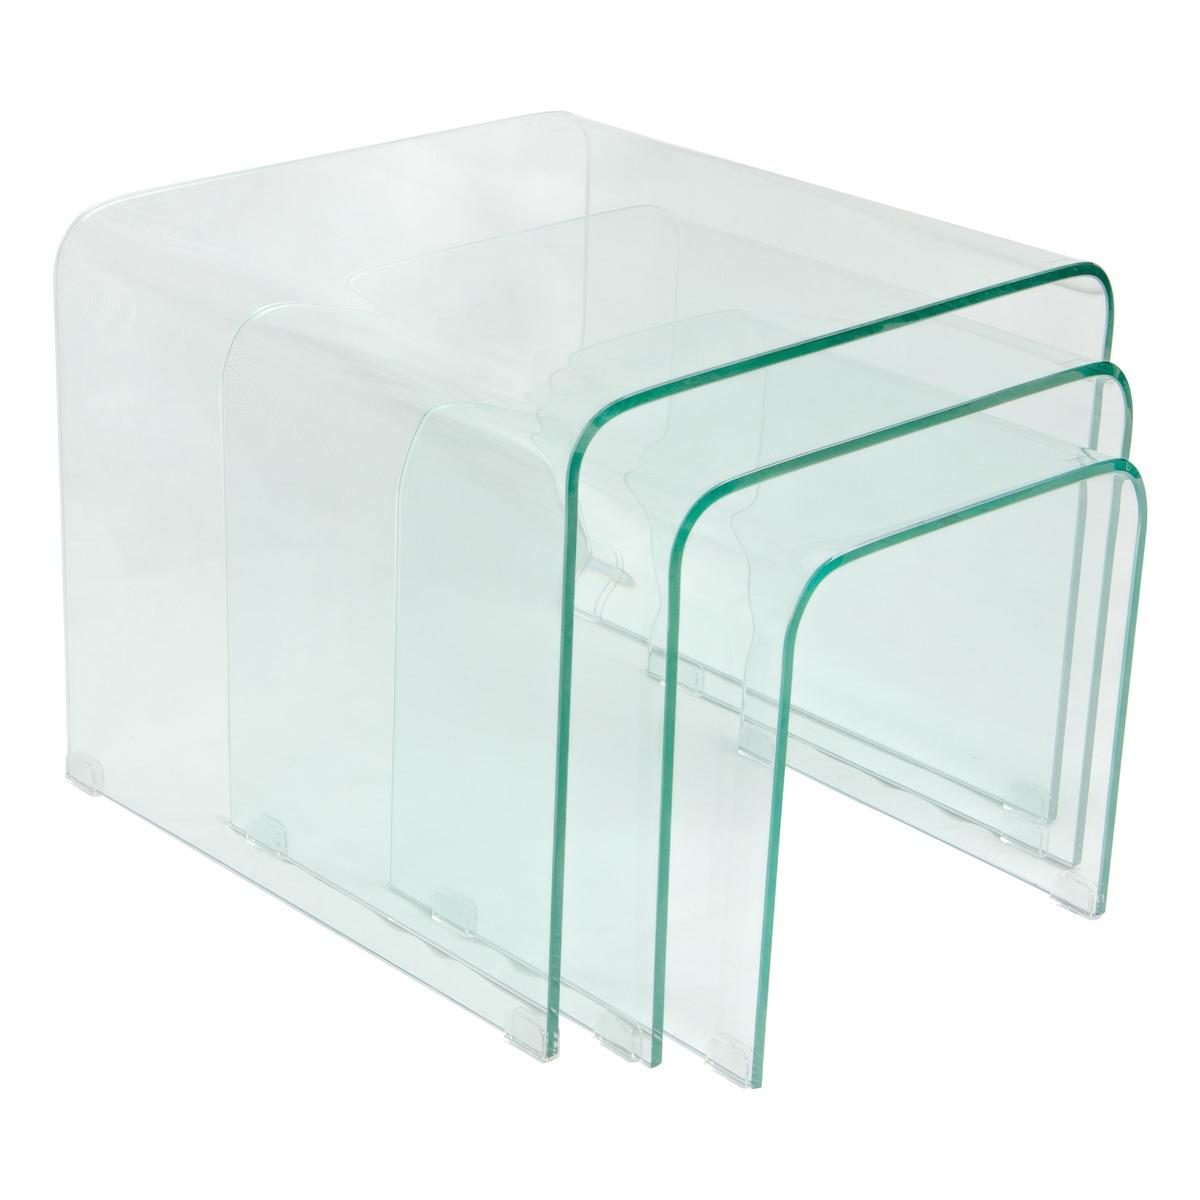 Table basse en verre trempé - 50 x 50 x 45 cm - Transparent